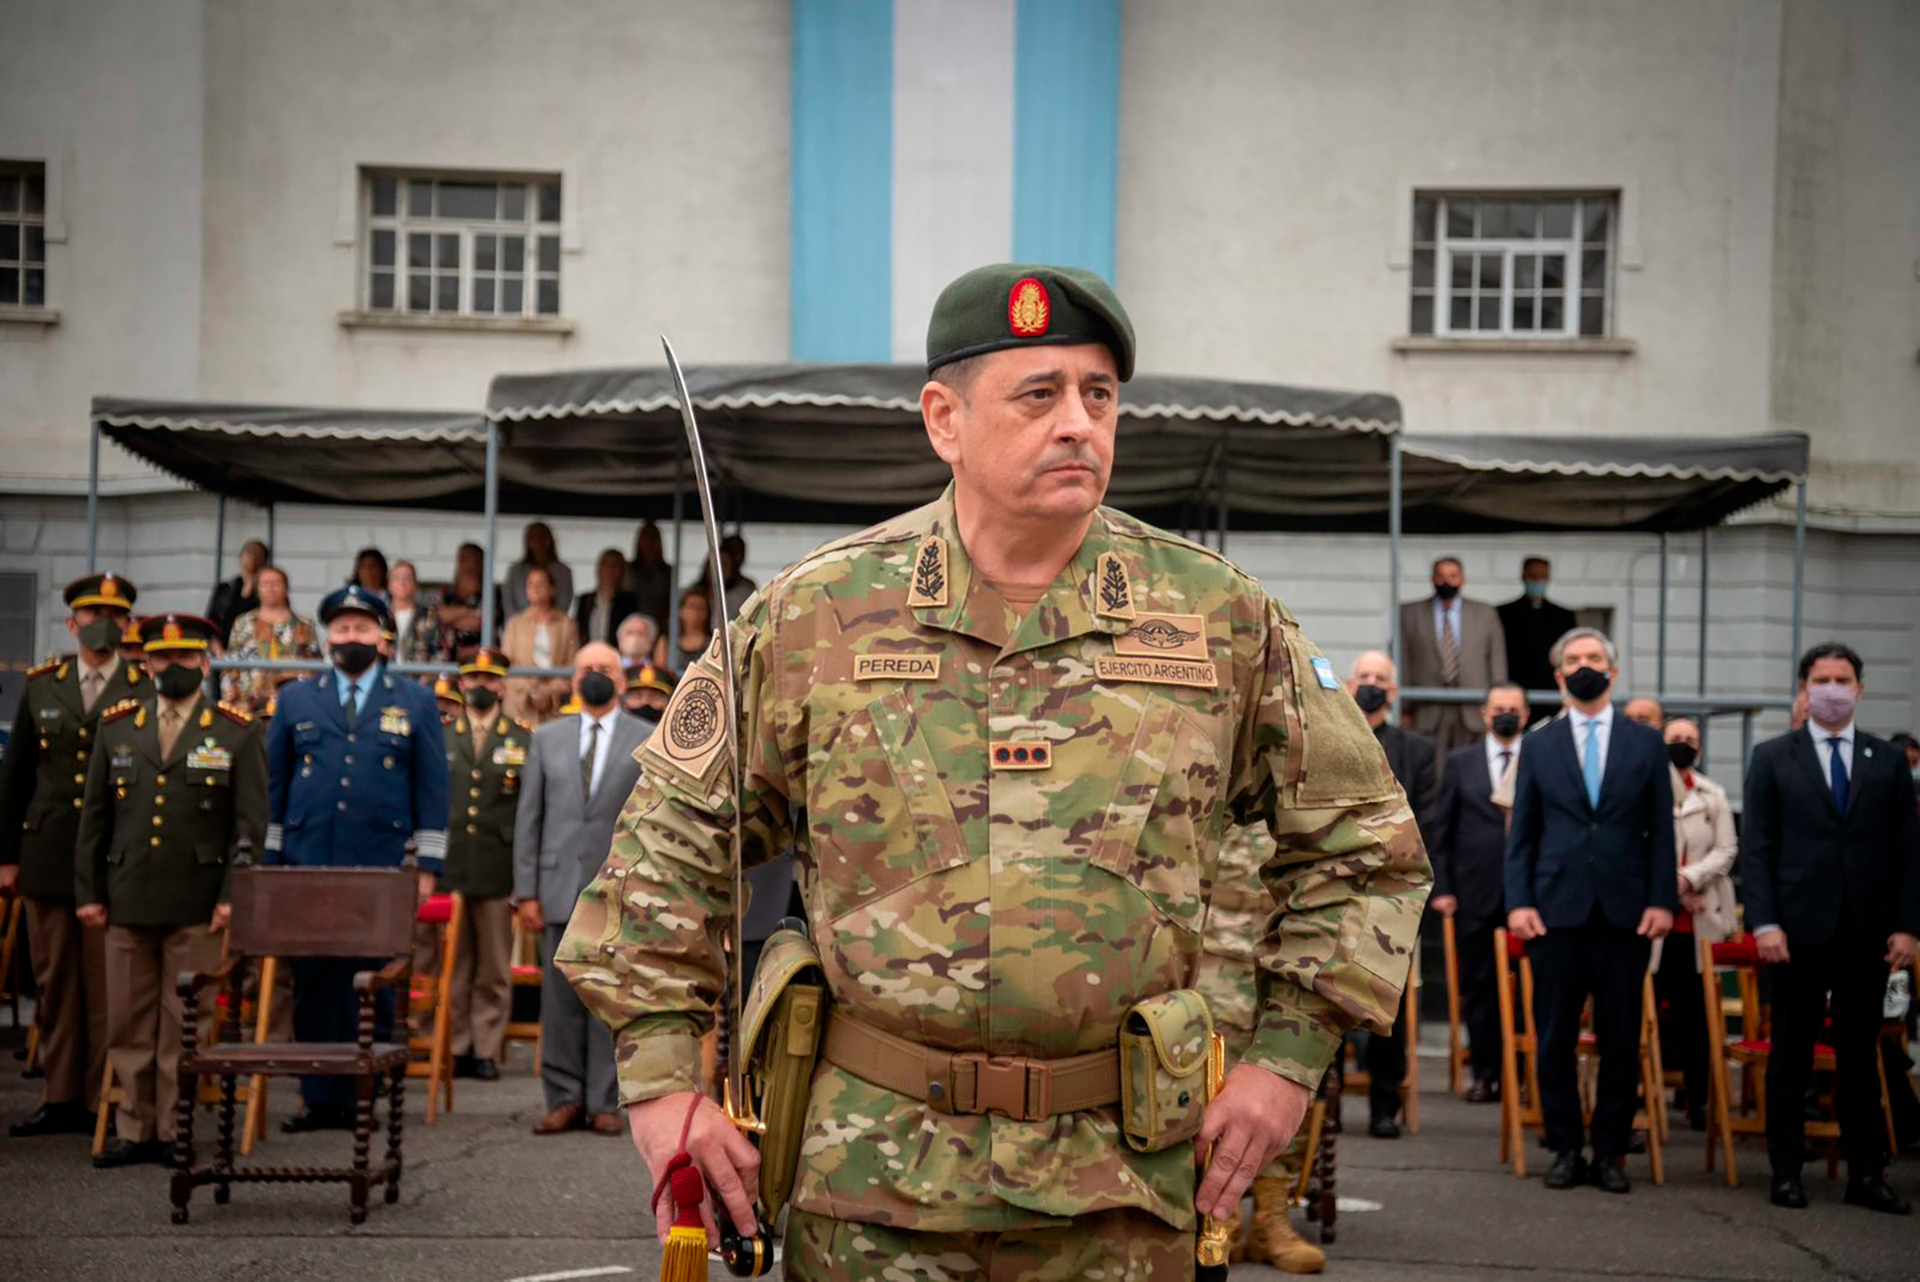 El Gobierno oficializó el ascenso de rango de Guillermo Pereda, jefe del Ejército, junto a otros doscientos militares